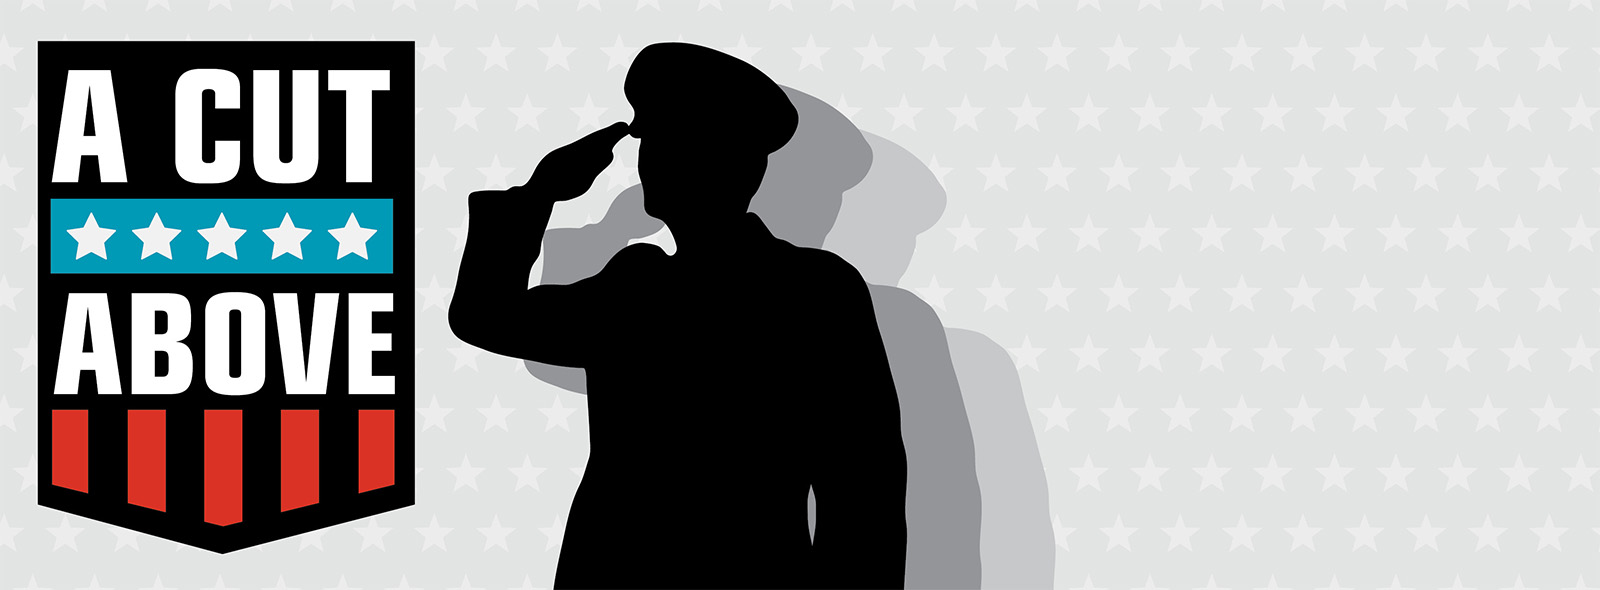 Military member saluting